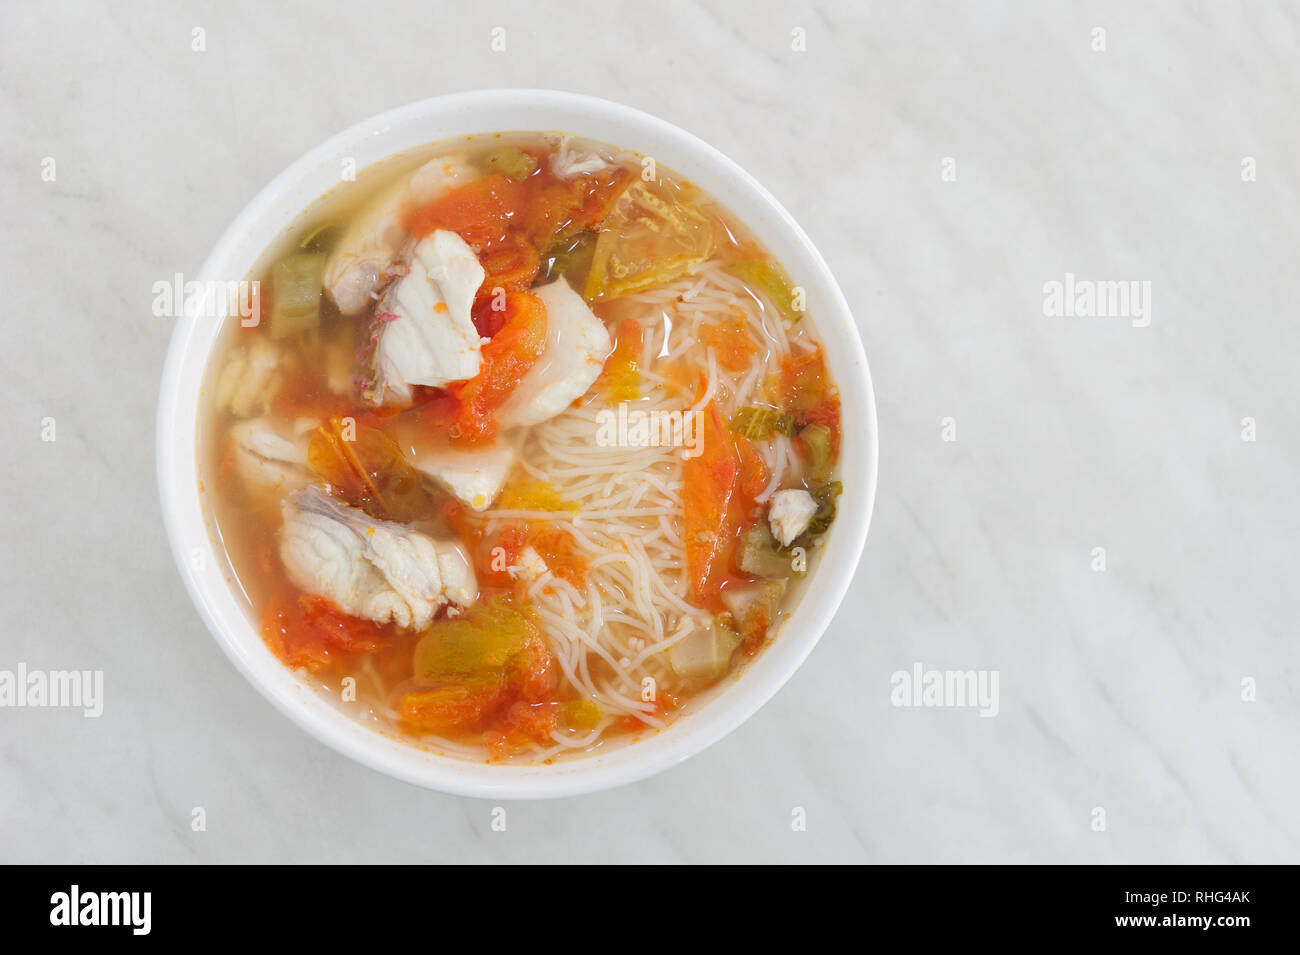 Malese strade delizioso cibo speziato al pesce fresco zuppa di pesce in salsa tomyam calda con vermicelli di riso o riso tagliatelle. Foto Stock